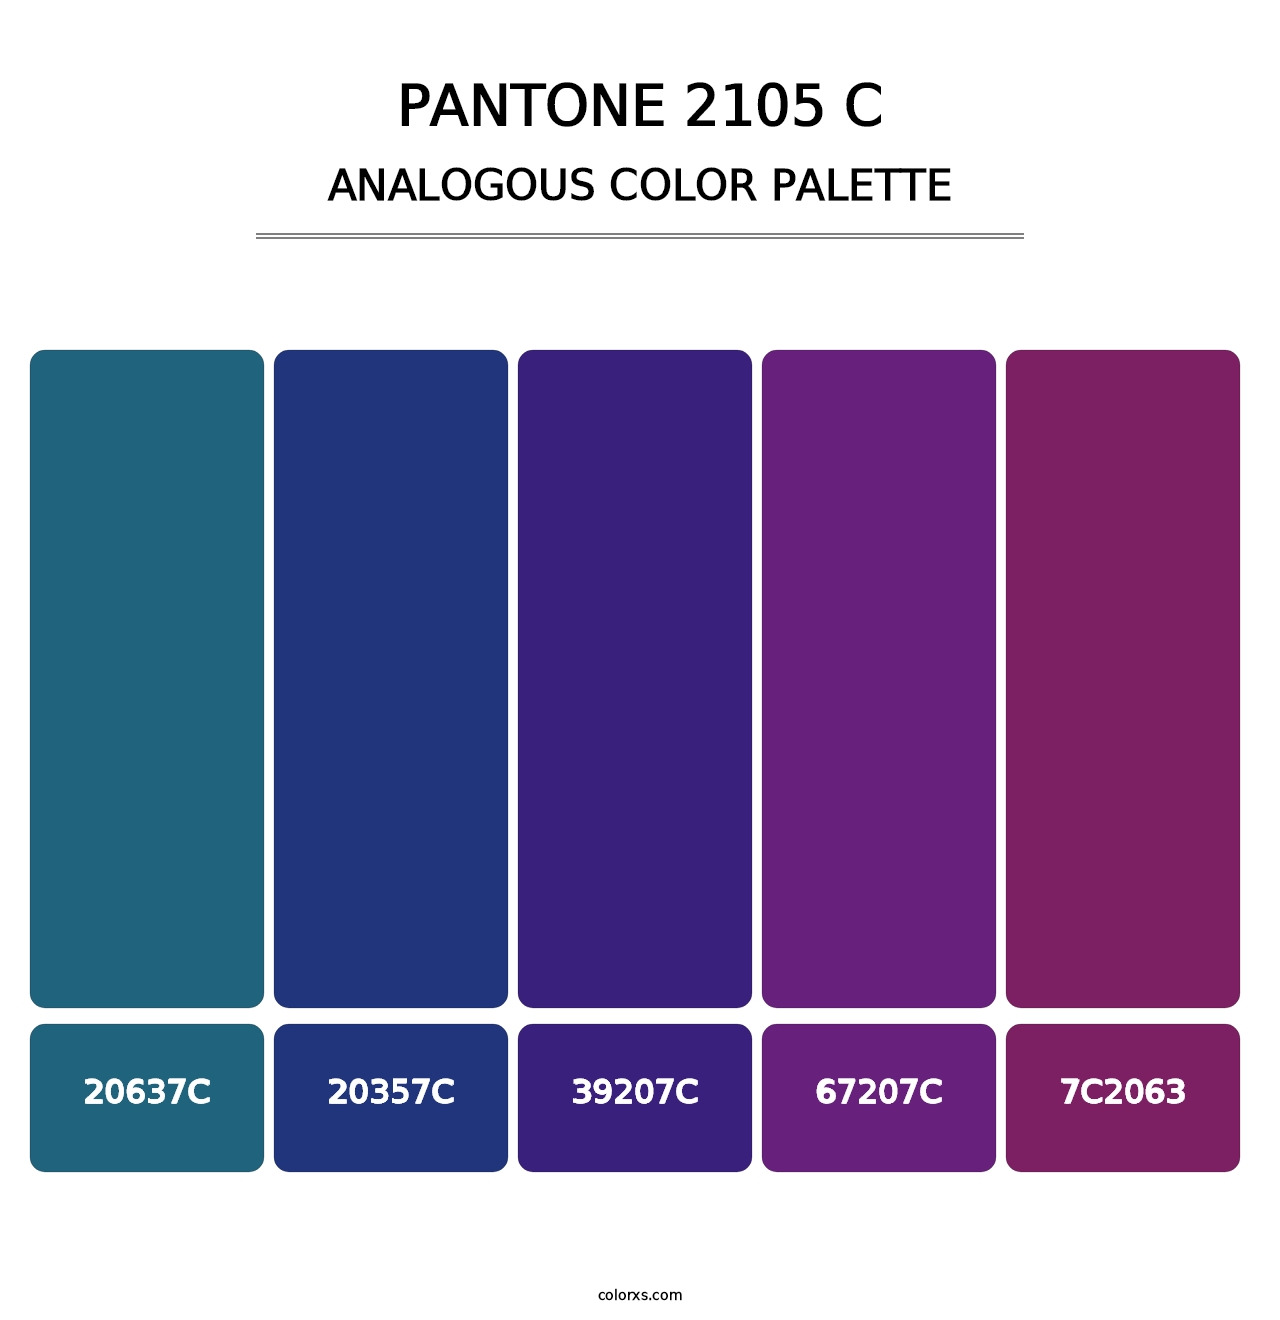 PANTONE 2105 C - Analogous Color Palette